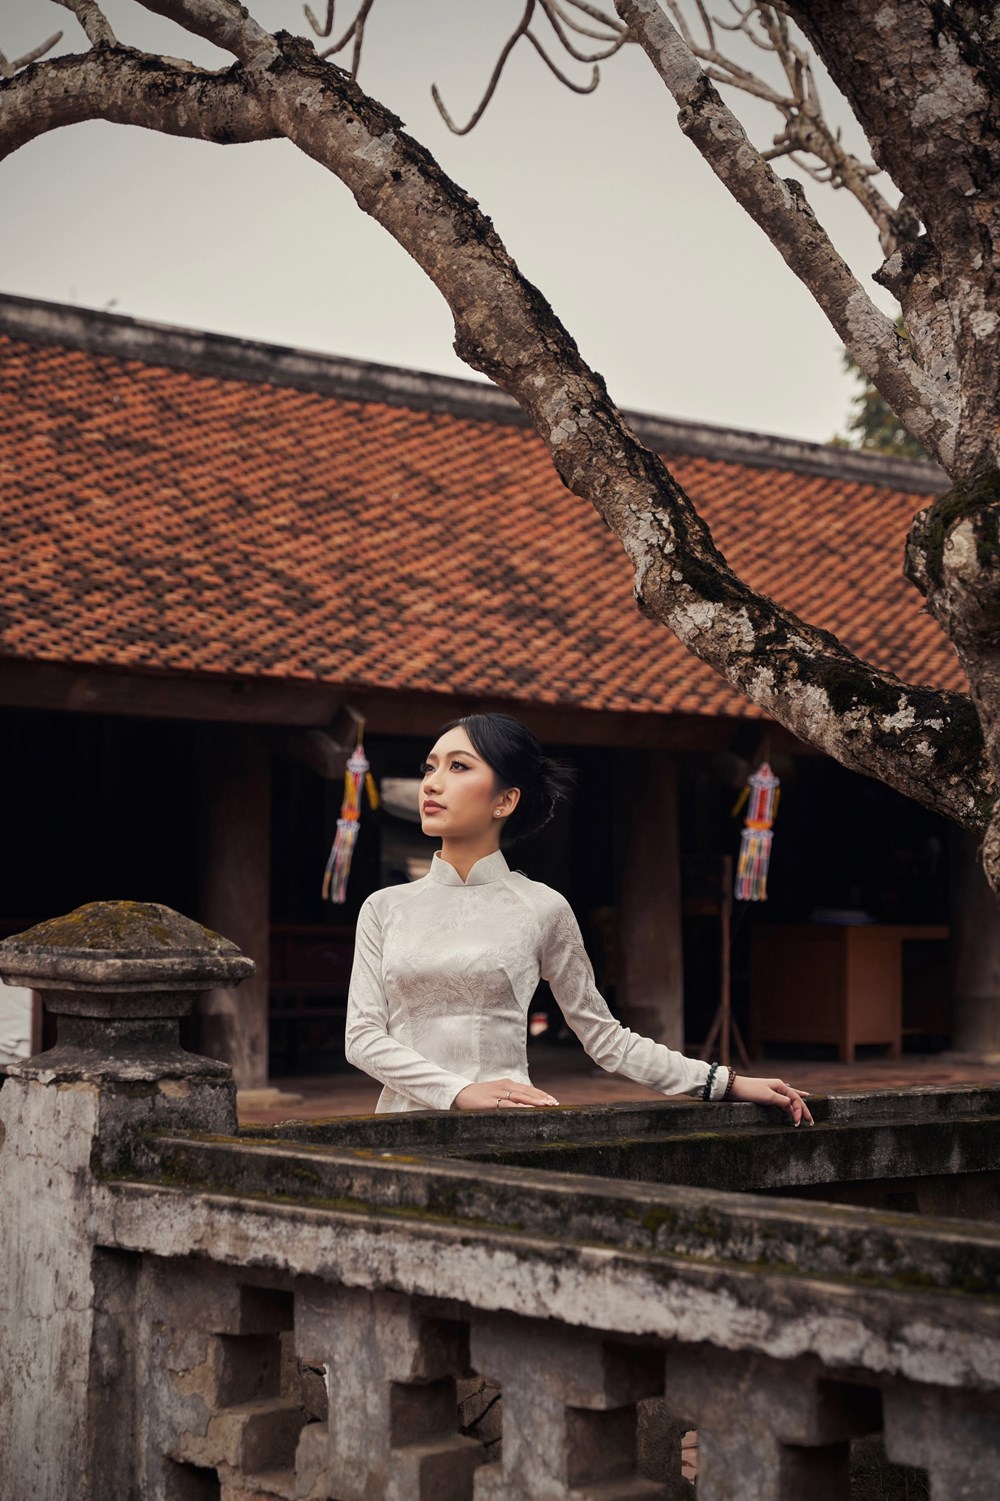 “Đại sứ Sinh viên du lịch năm 2024” đẹp nền nã trong bộ áo dài trắng tinh khôi ở chùa Keo - ảnh 7